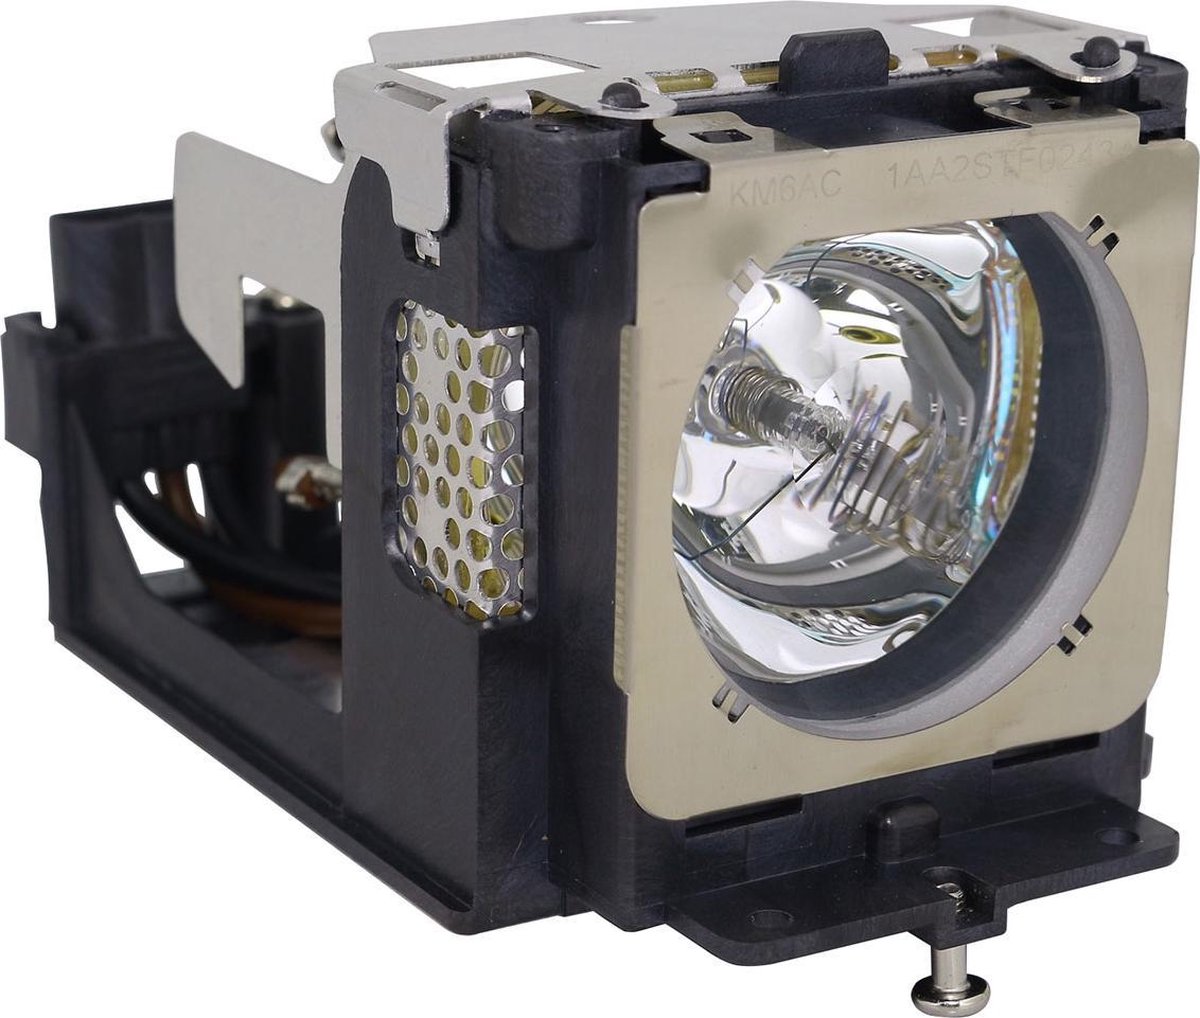 Beamerlamp geschikt voor de SANYO PLC-XU106K beamer, lamp code POA-LMP111 / 610-333-9740. Bevat originele NSHA lamp, prestaties gelijk aan origineel.